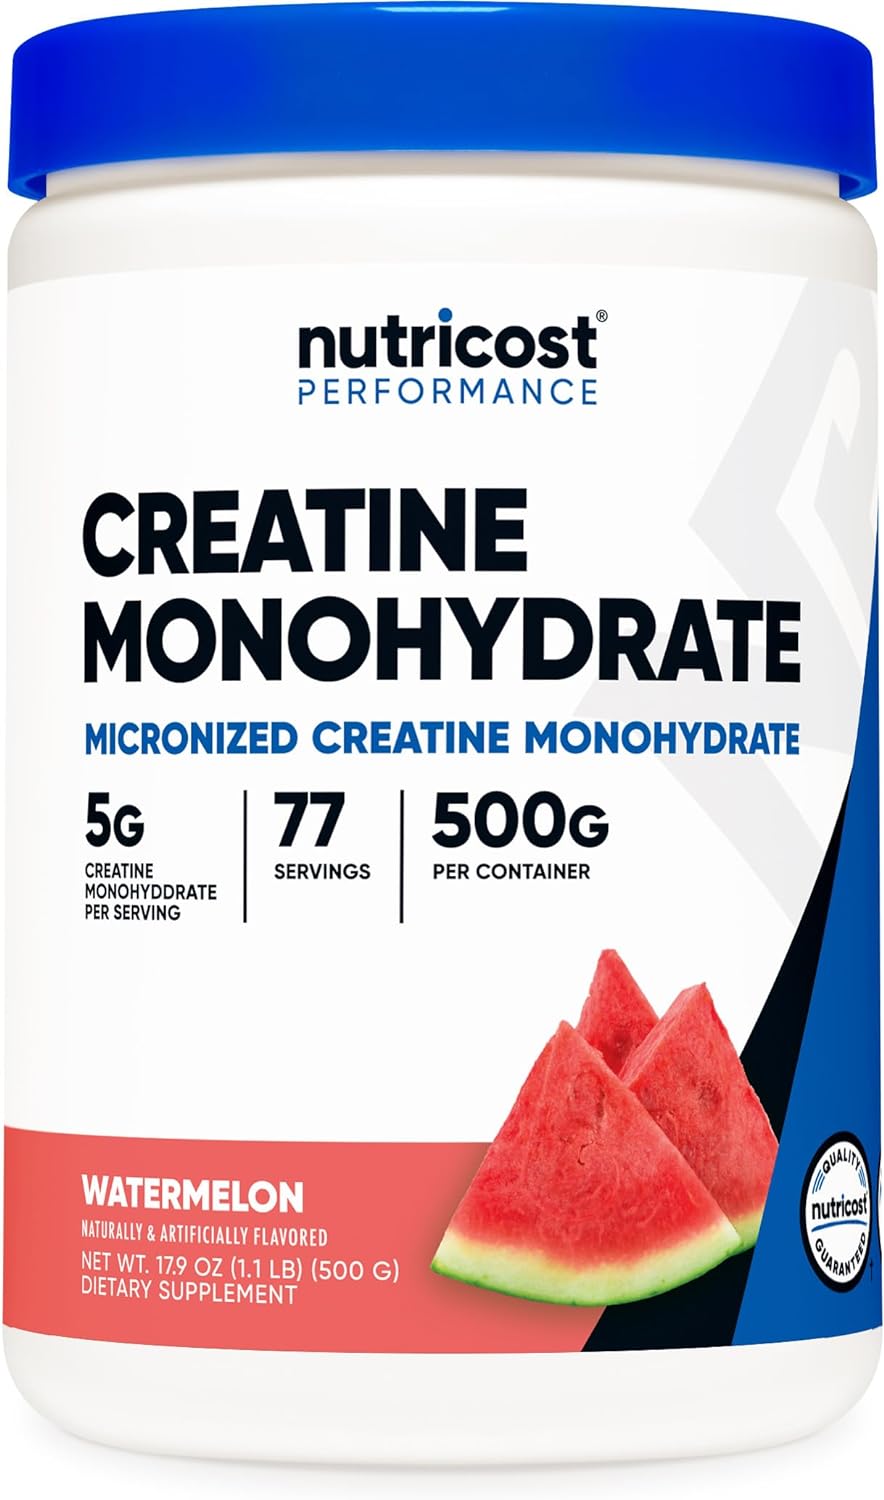 Nutricost Creatine Monohydrate Powder (Watermelon, 500 Gram) - Micronized Creatine Supplement - Vegan, Non-GMO, Gluten Free